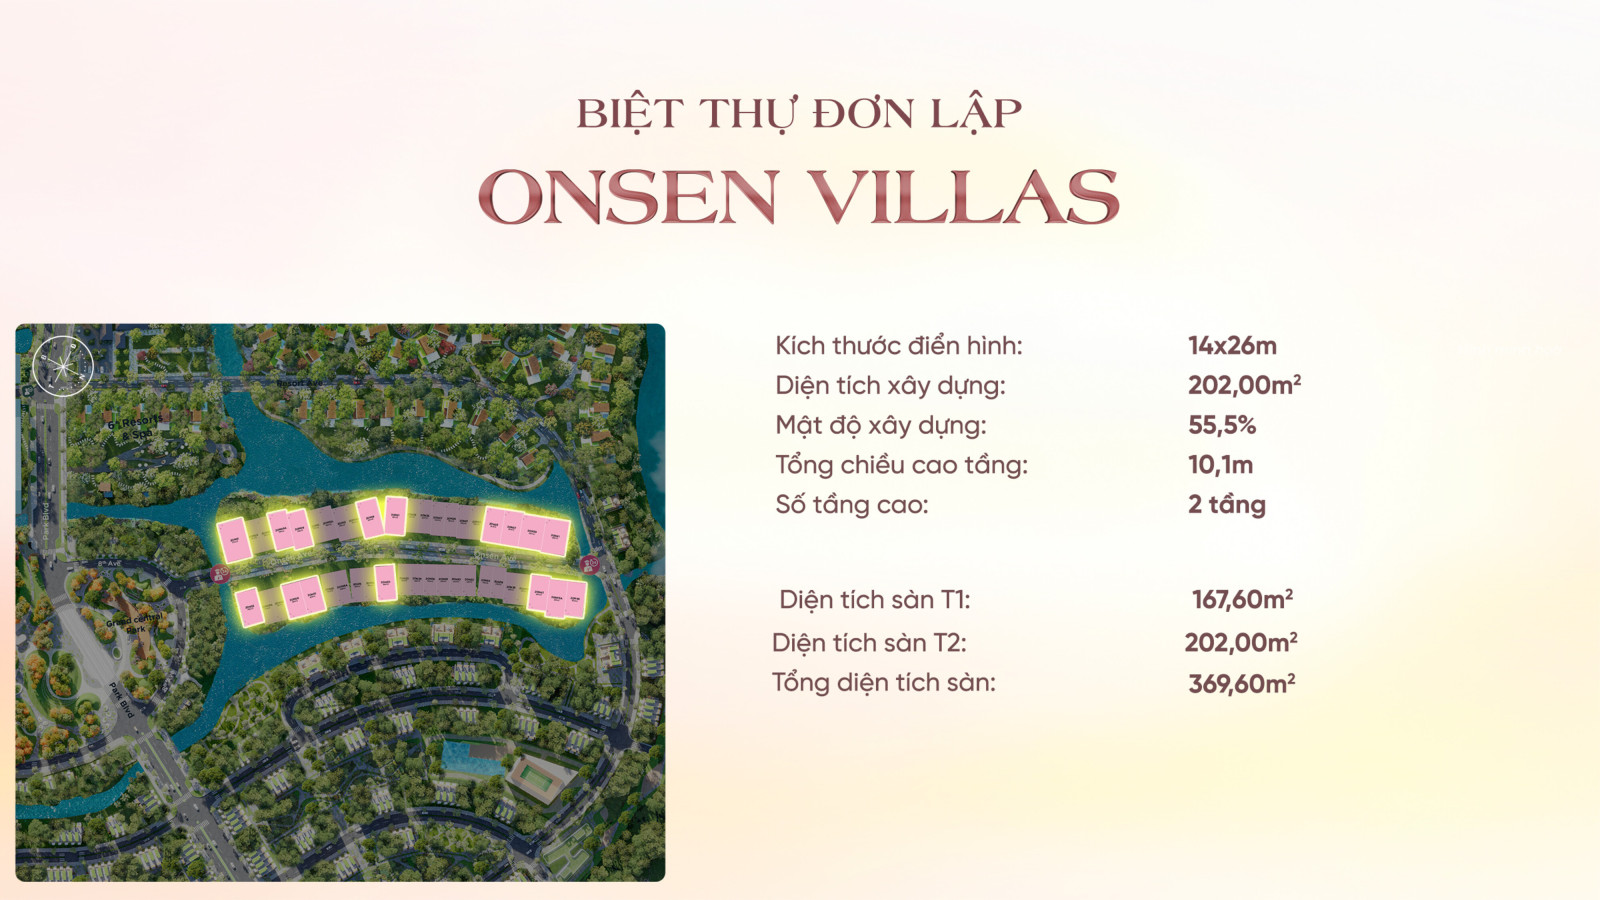 BIỆT THỰ đơn lập ONEN Villas Ecovillage Saigon River